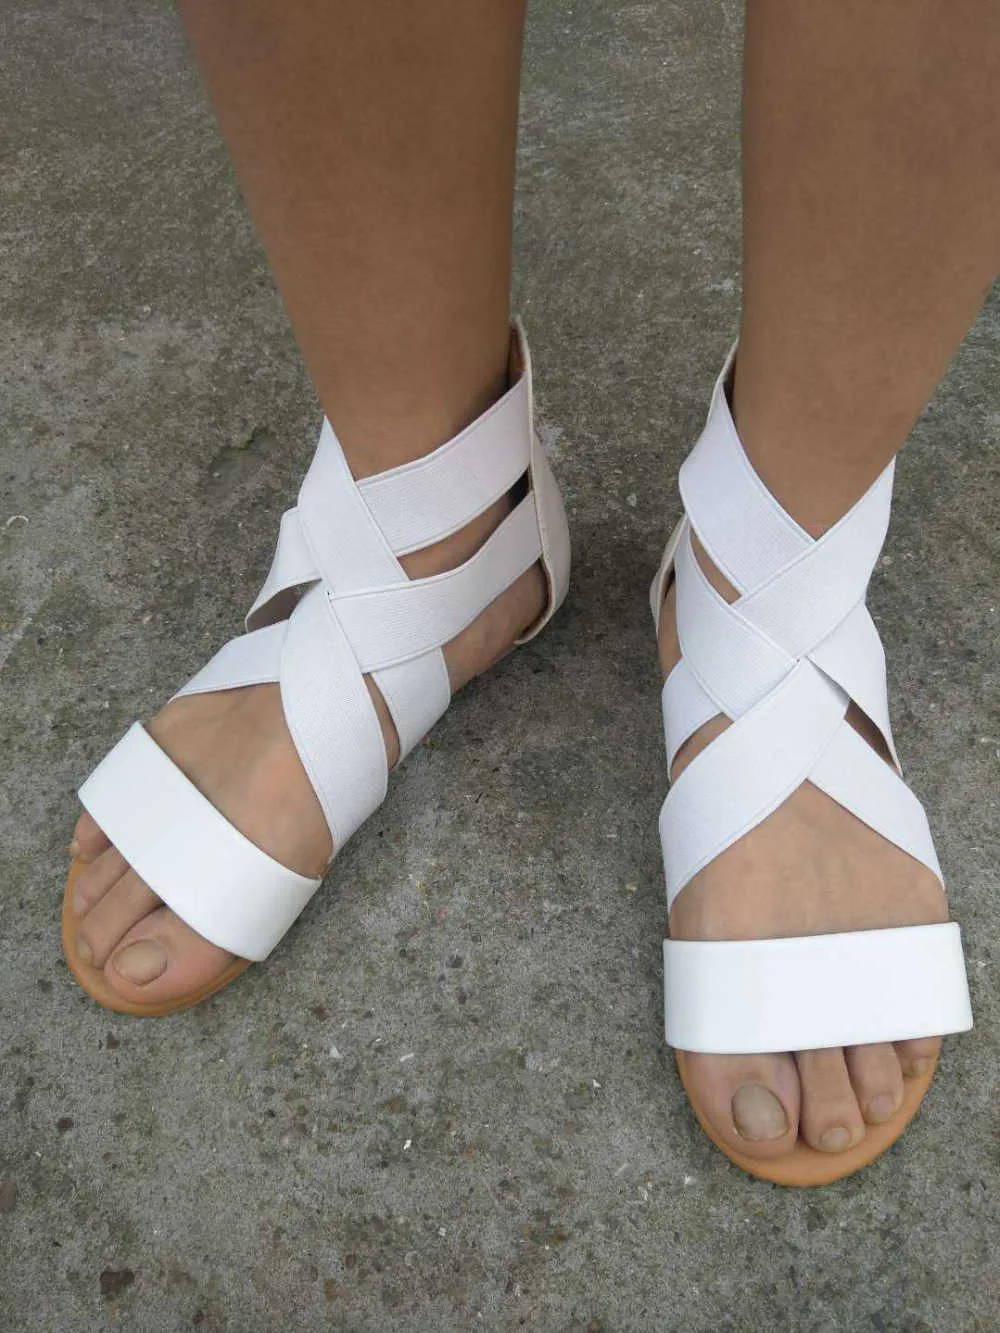 IMKKG été sandales femmes chaussures décontractées femme gladiateur plat Rome Zip Feminina fond souple Sandalia m192 Y0721